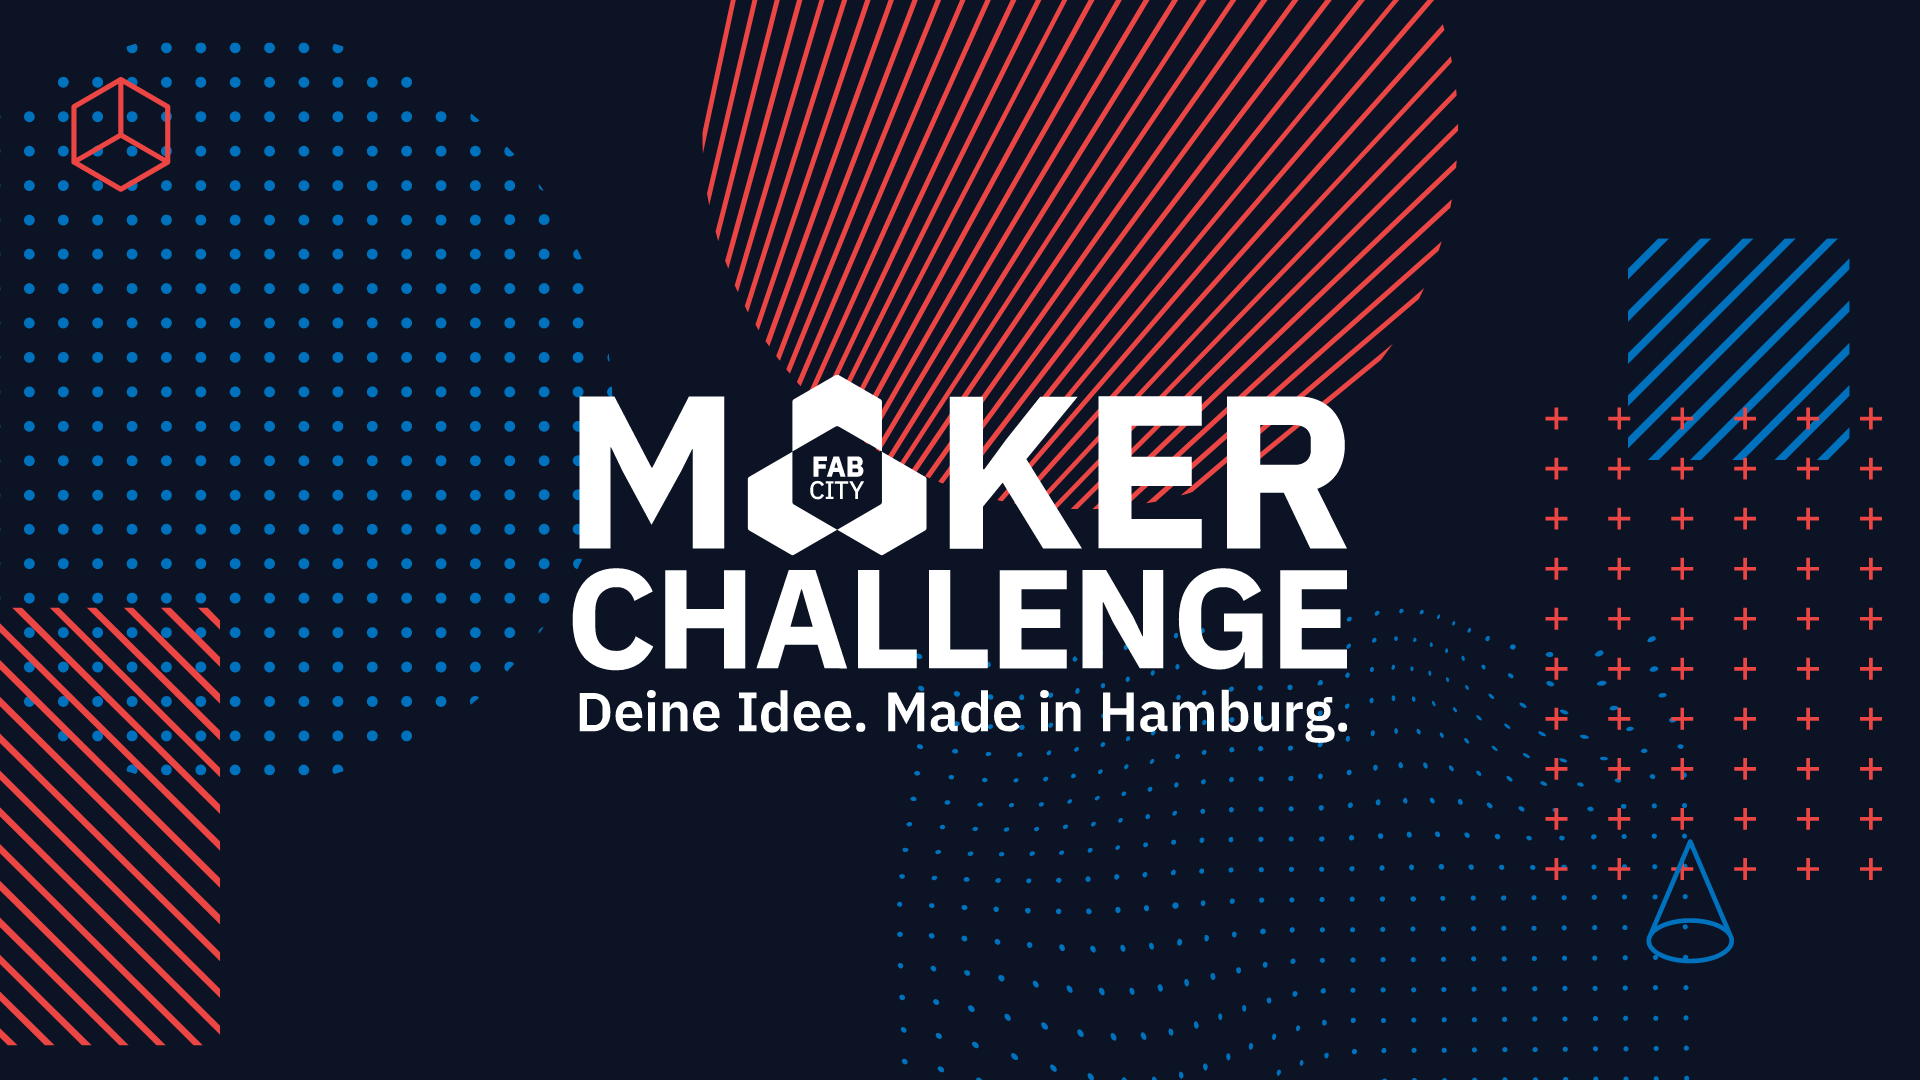 Social Media Sharepic for the Maker Challenge Hamburg